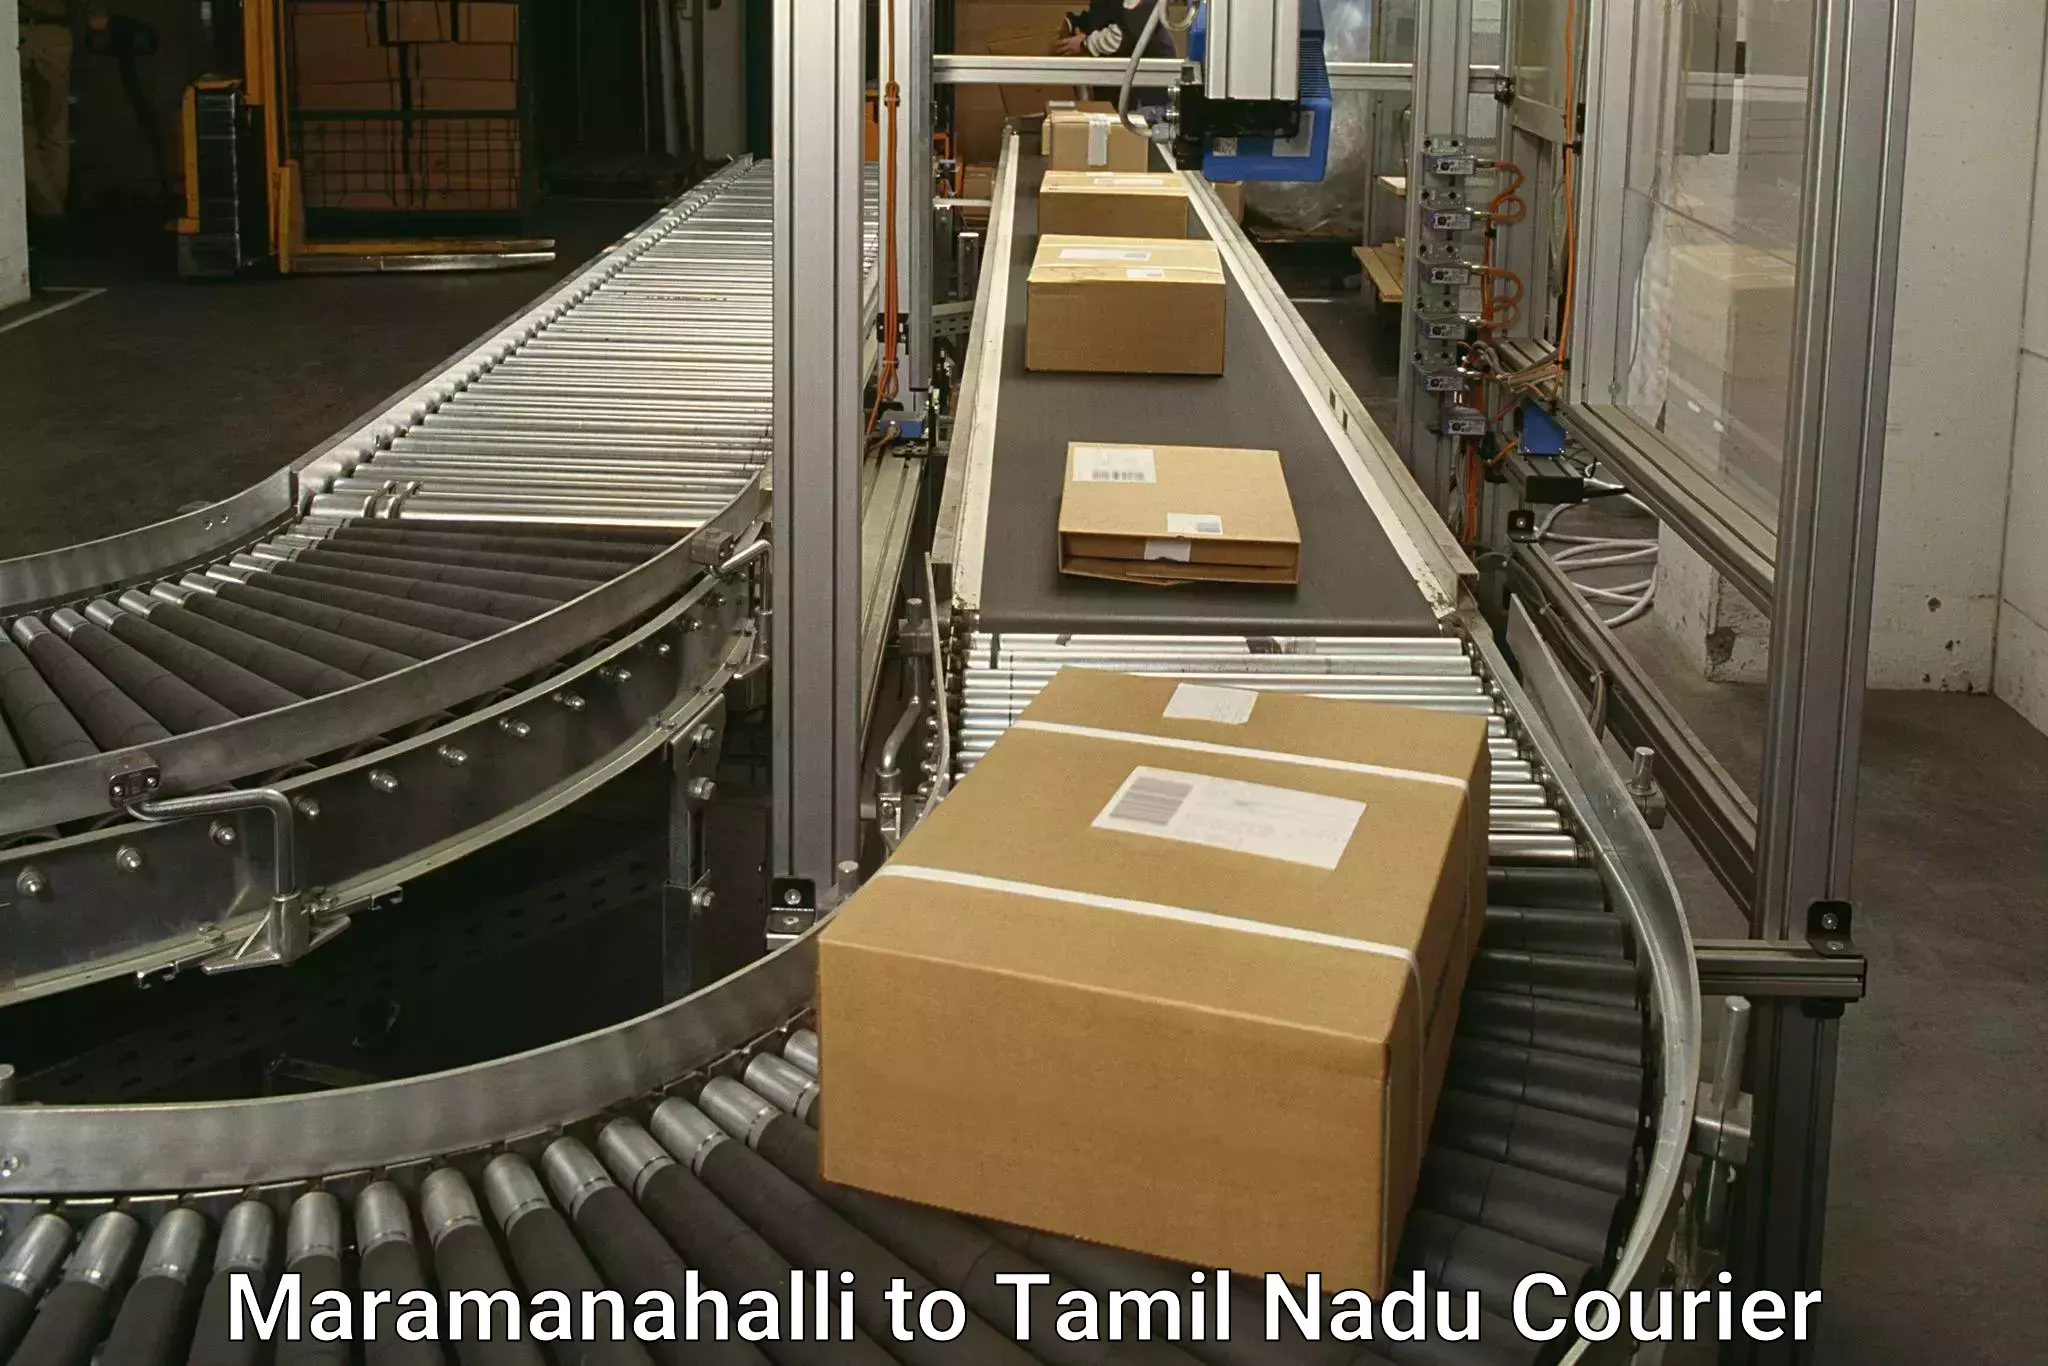 Express shipping Maramanahalli to Periyakulam